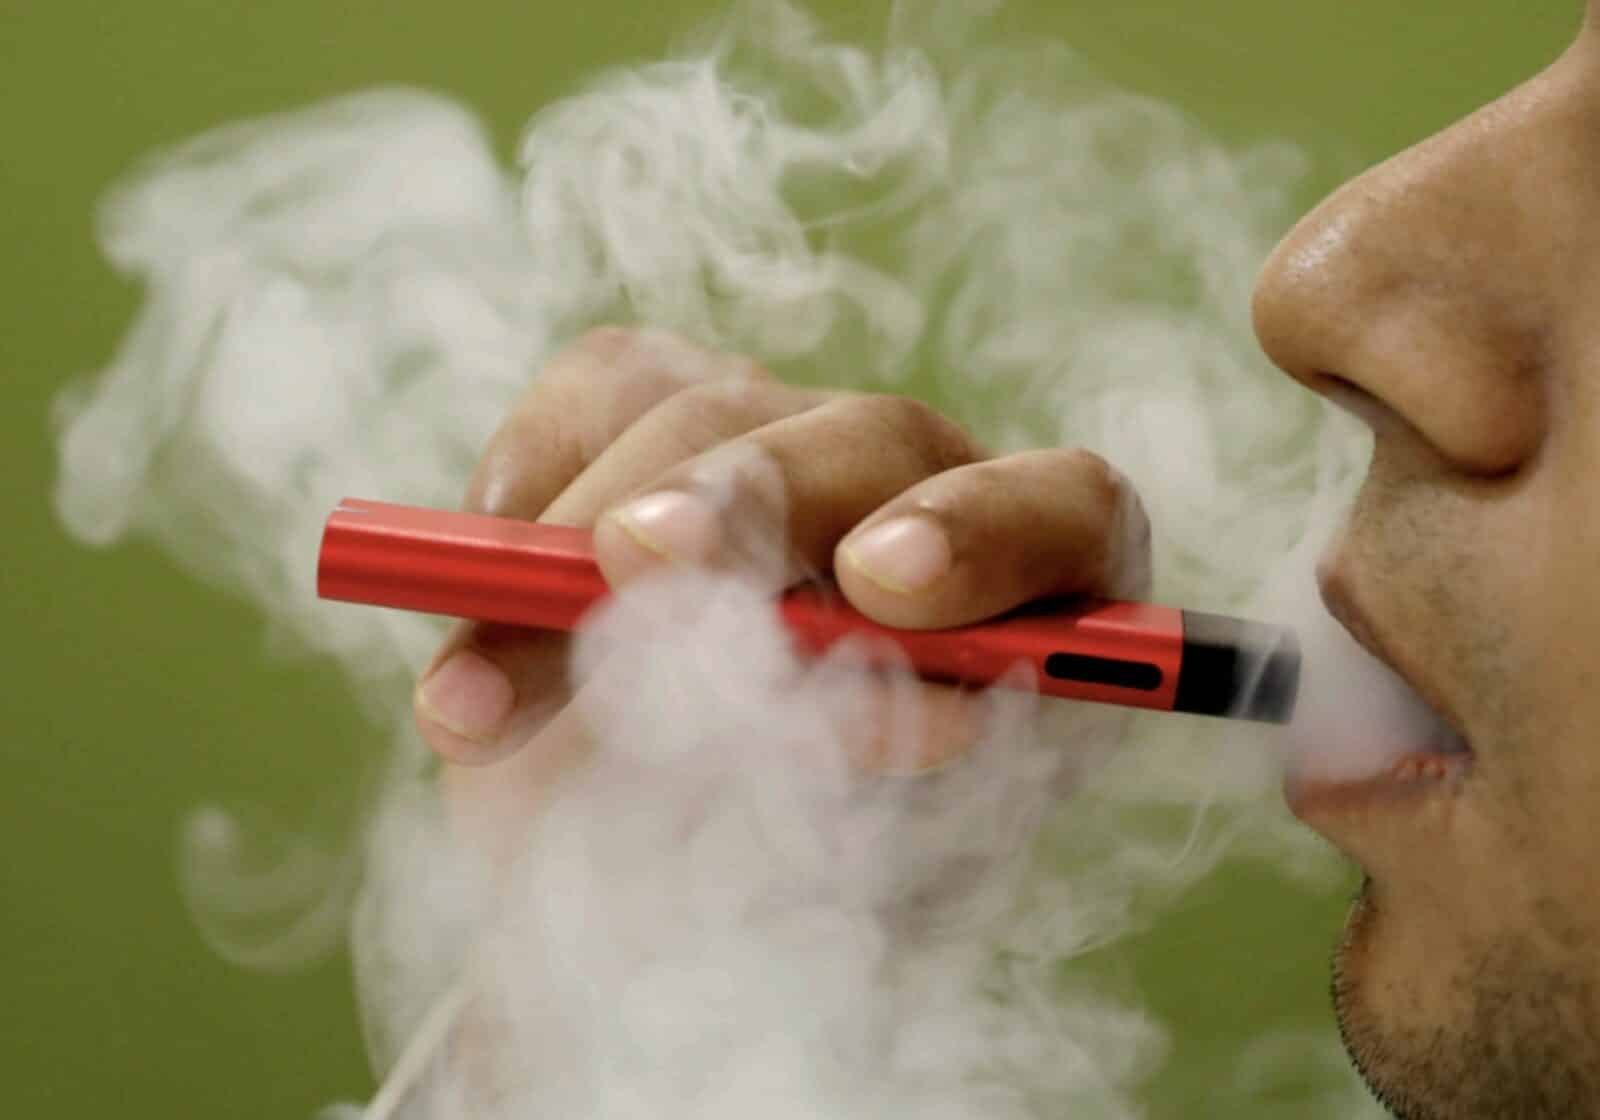 السجائر الإلكترونية تولد جيلاً جديدًا من المدخنين: أطباء الإمارات - أخبار